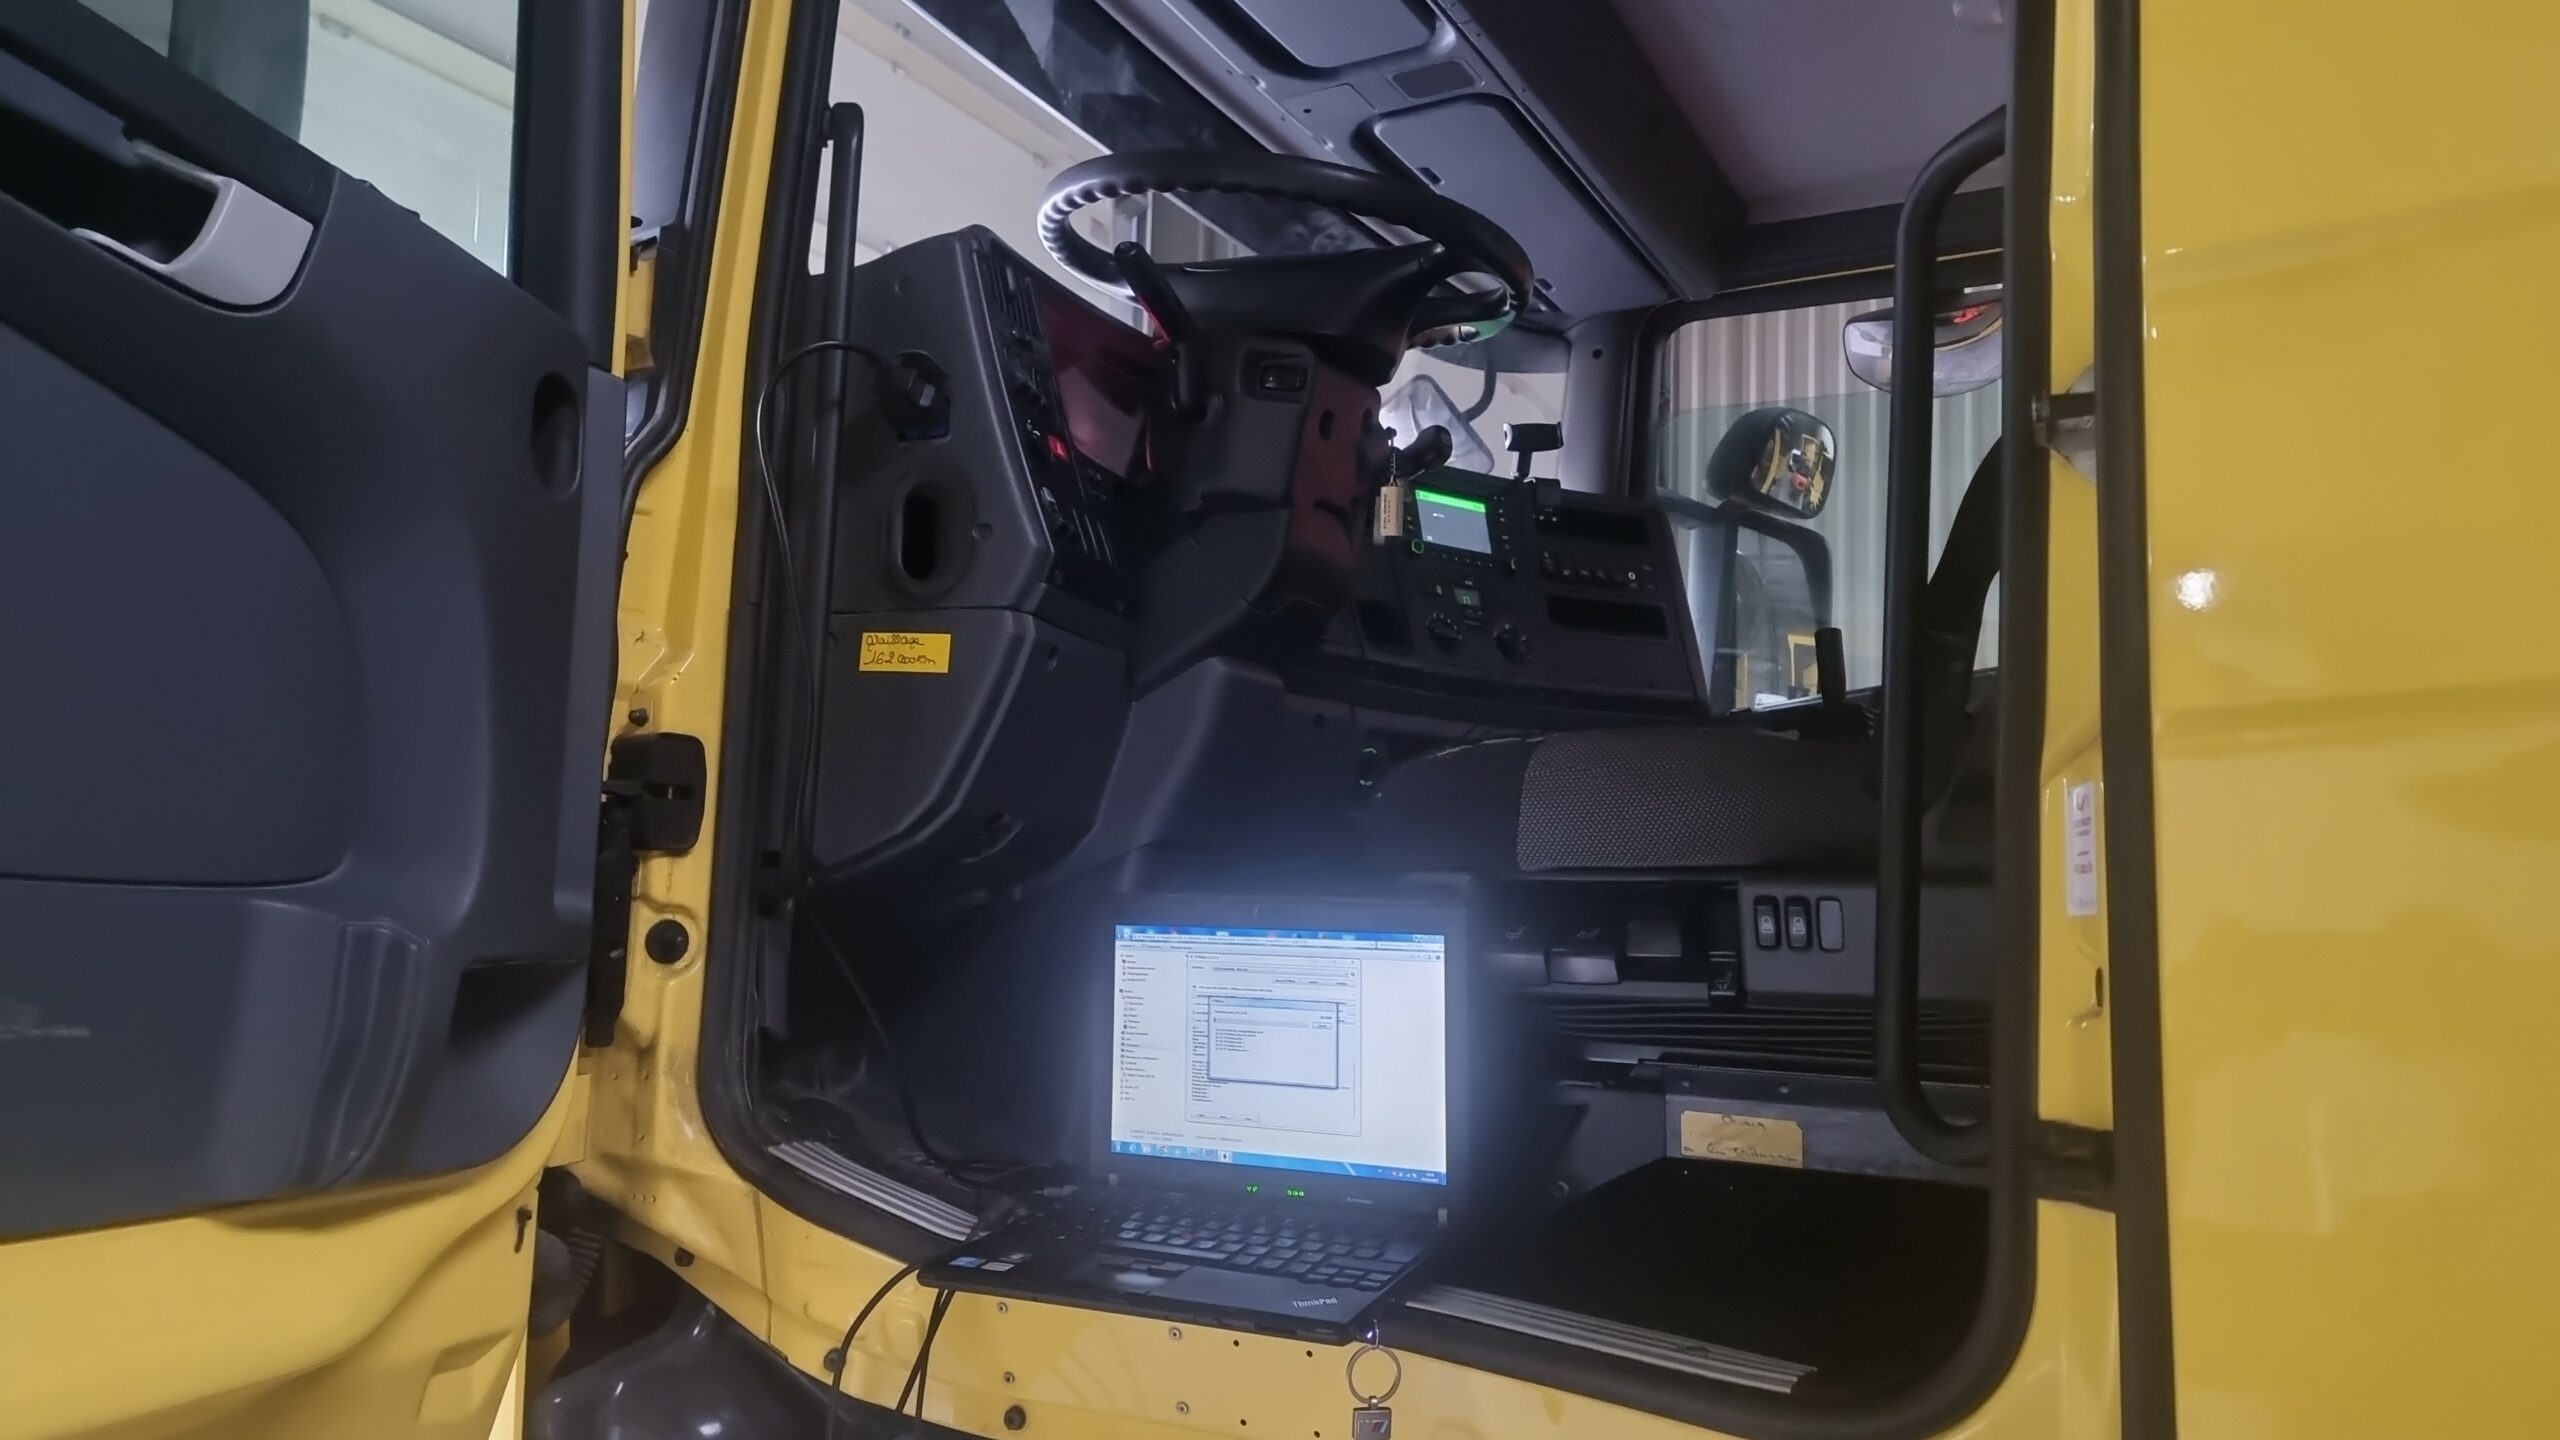 Fap encrassé Scania G410 - Taux de suie 127% - Solutions possibles